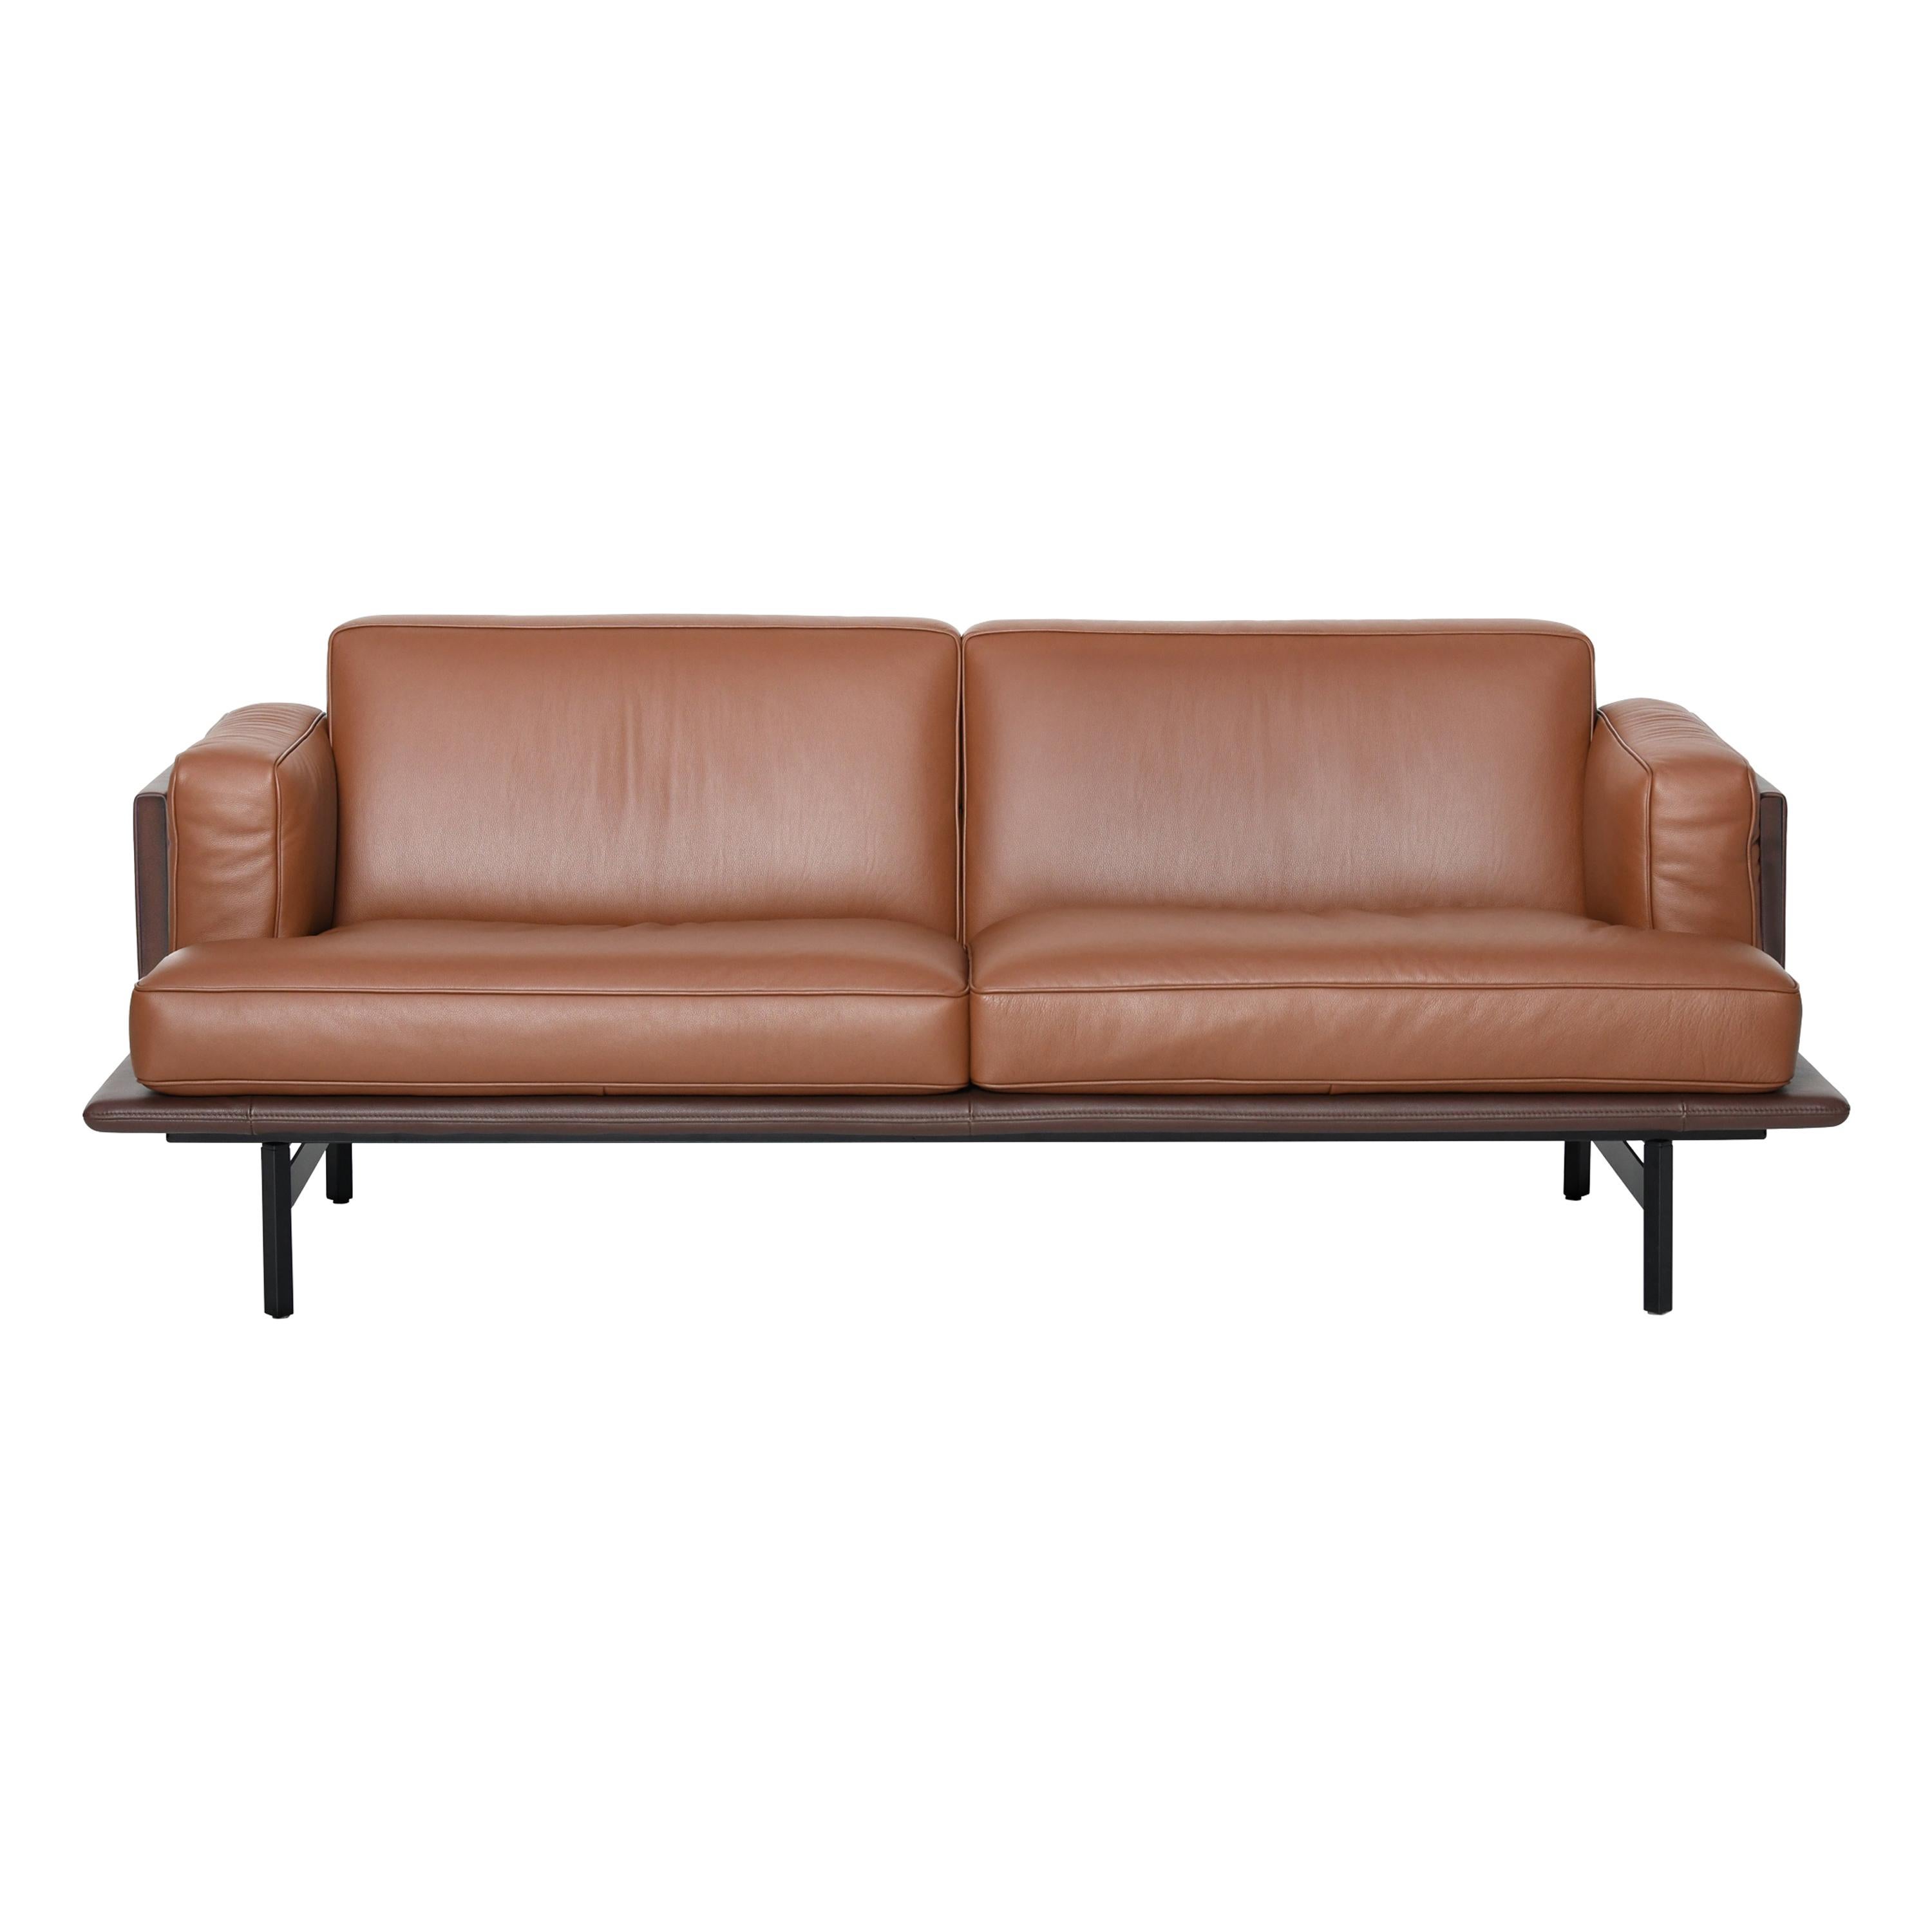 DS-175 Sofa by De Sede For Sale